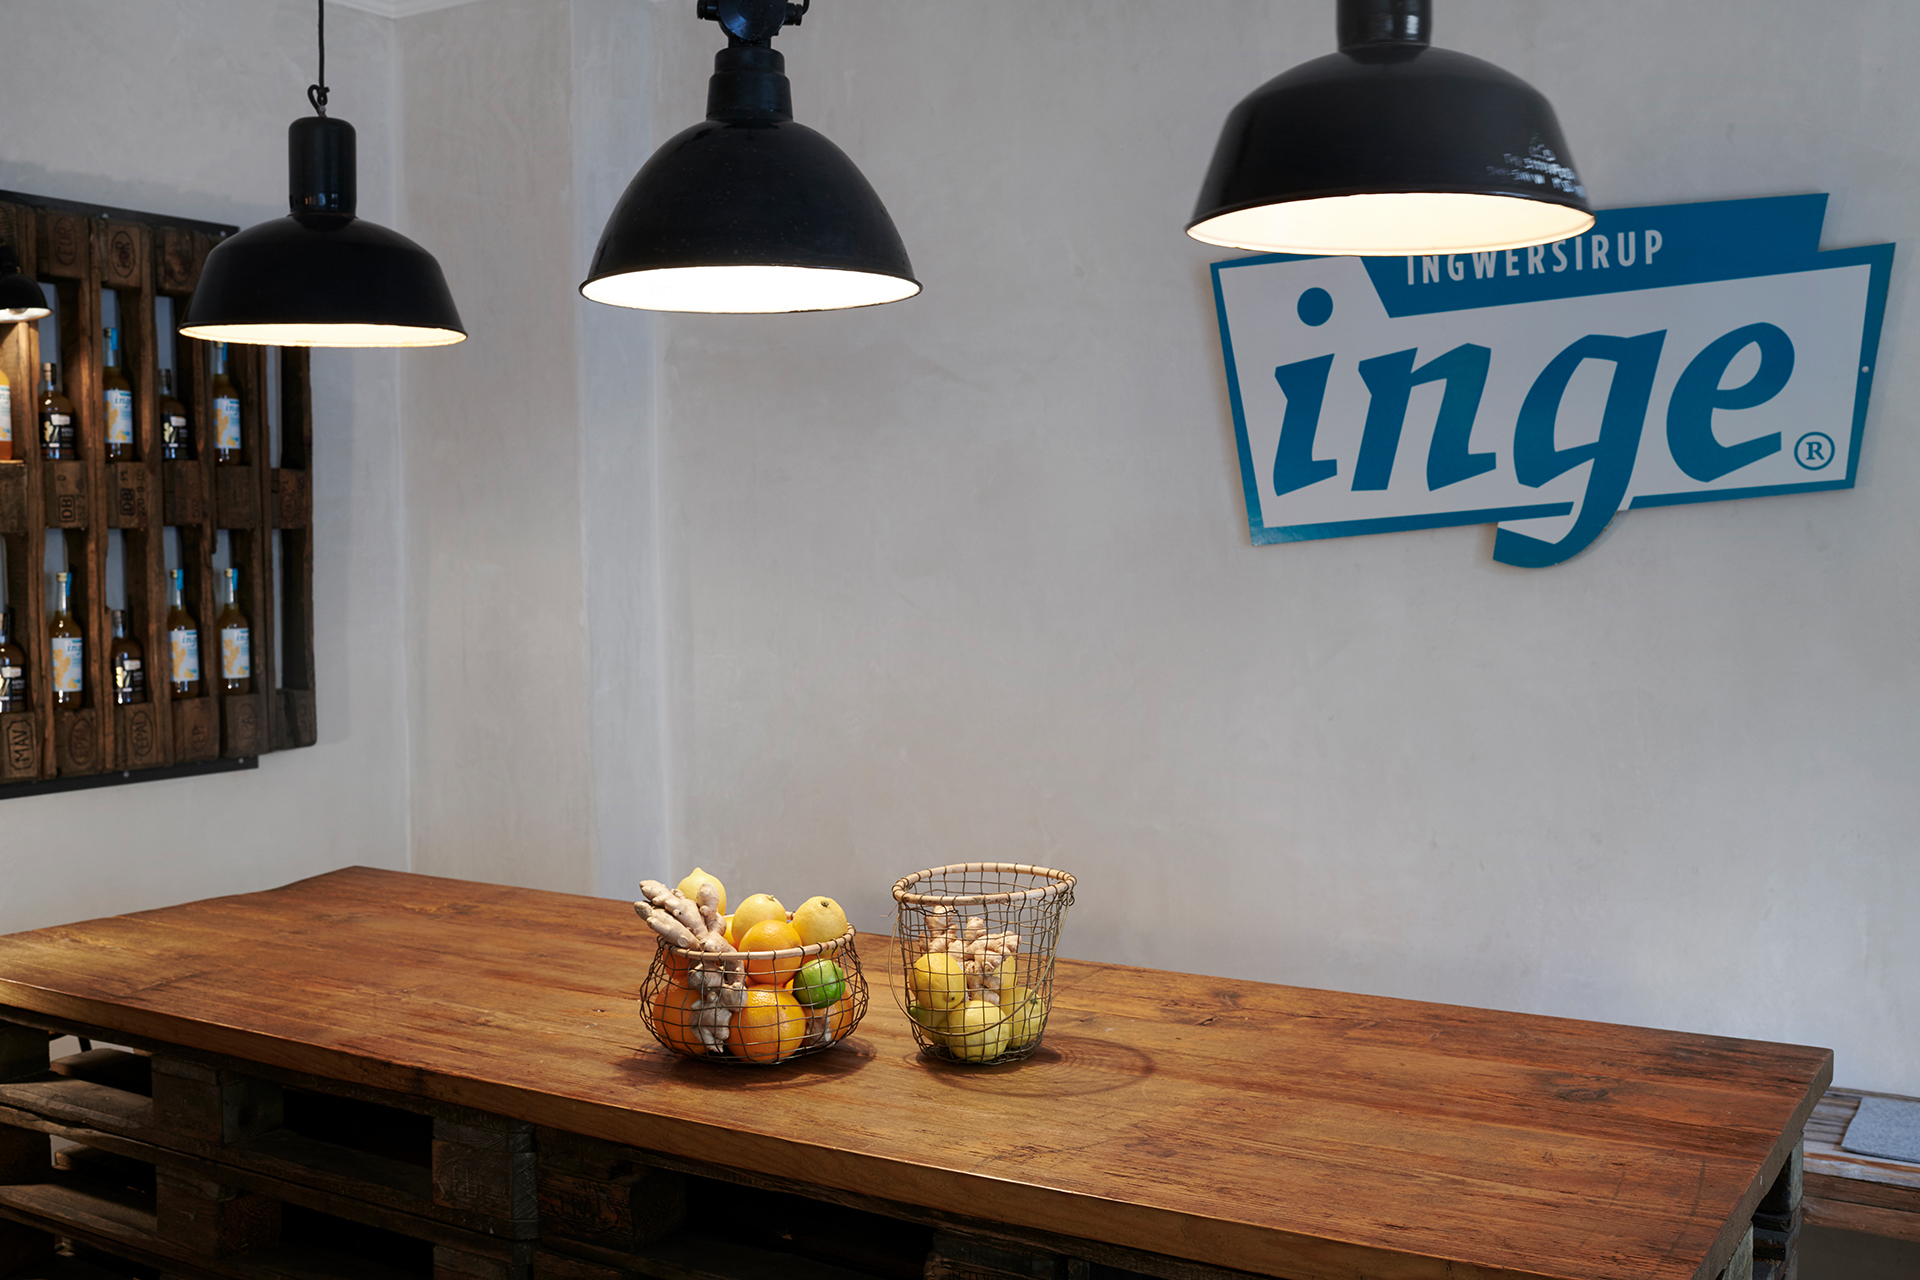 Holzmöbel und Lampen sorgen für eine gemütliche Atmosphäre im Inge Ladencafé